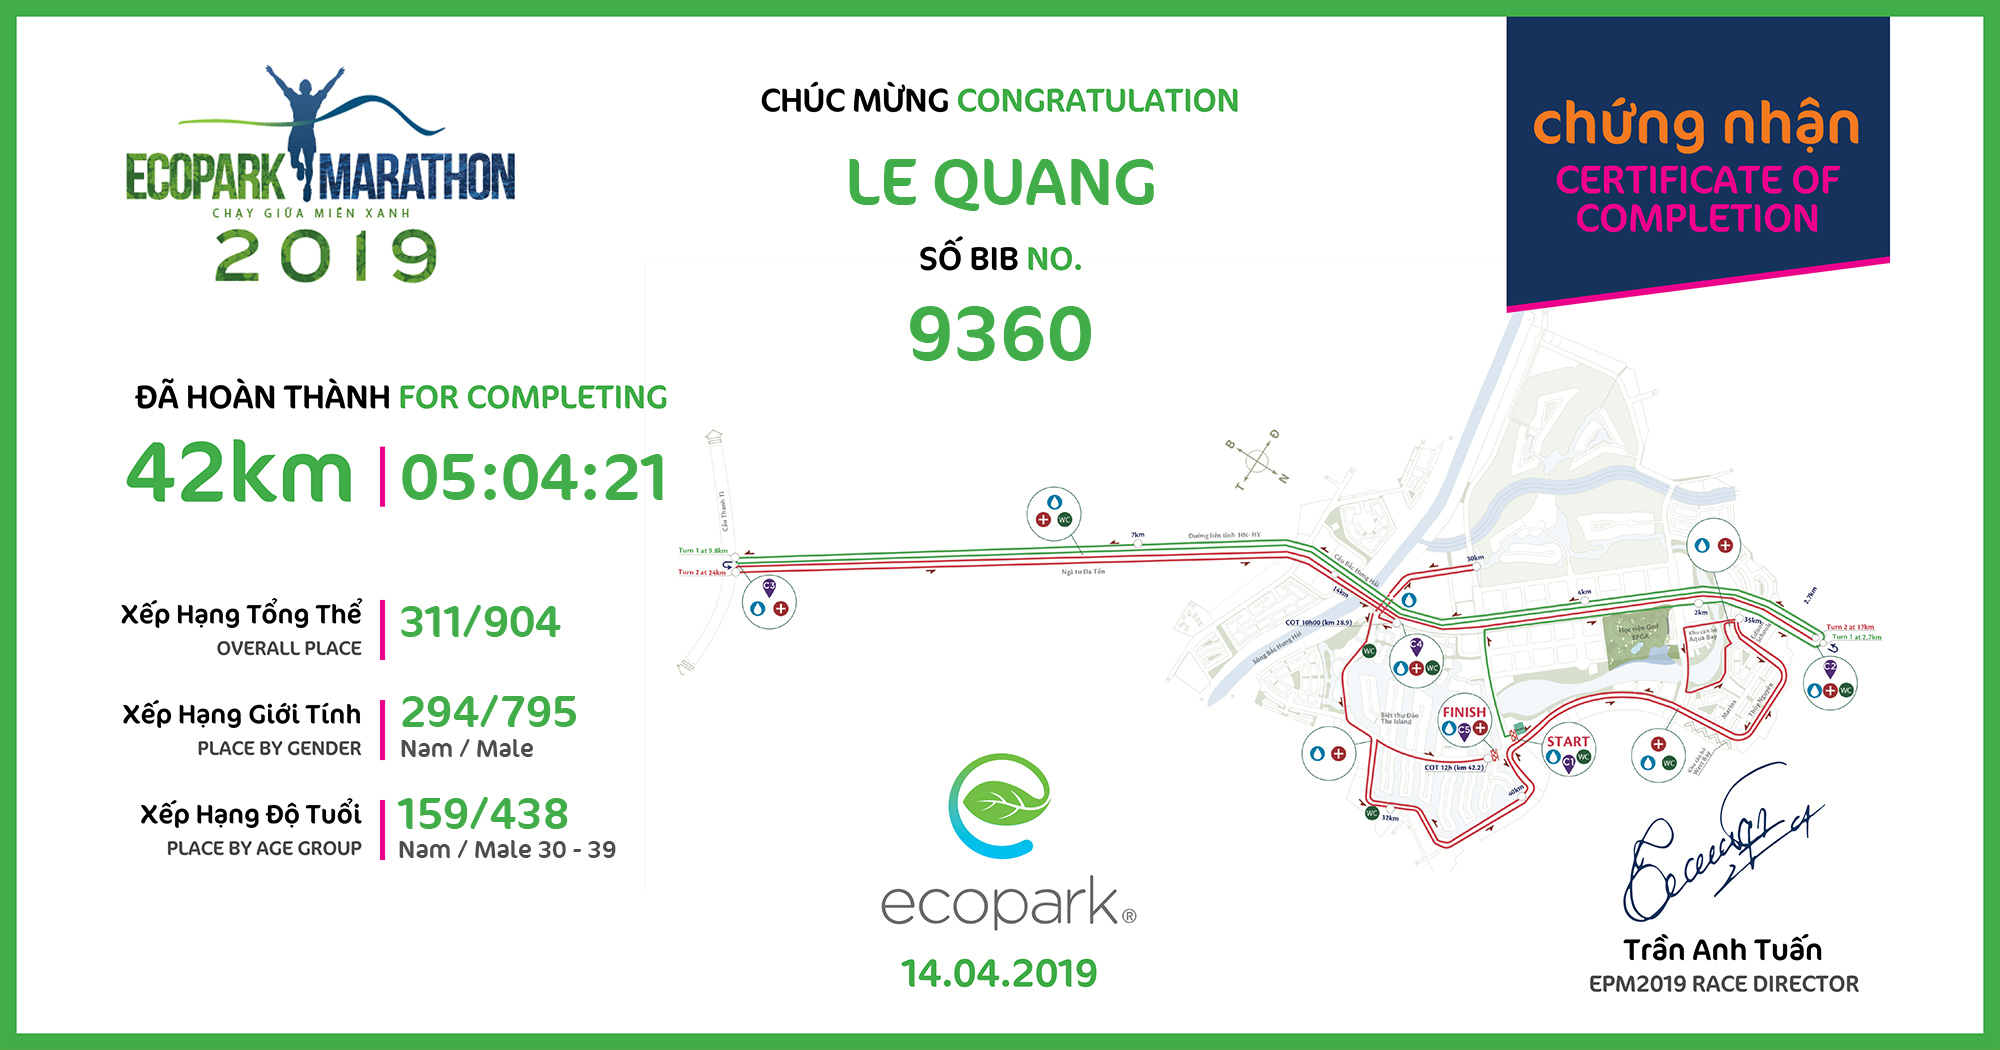 9360 - Le Quang